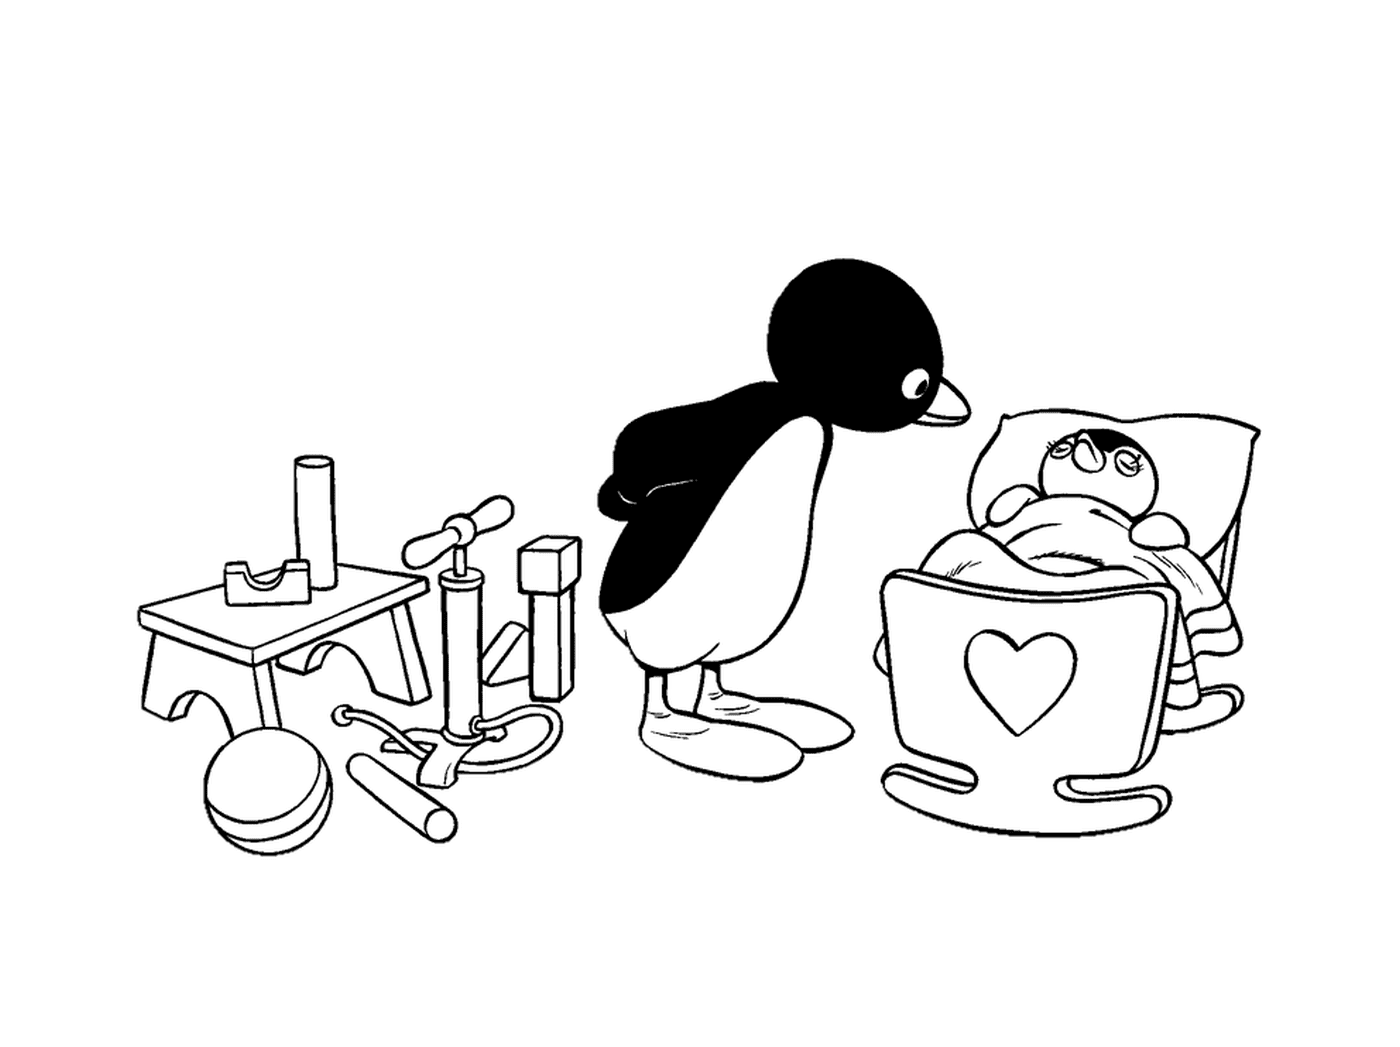  Пингвин и малыш пингвин в миске 